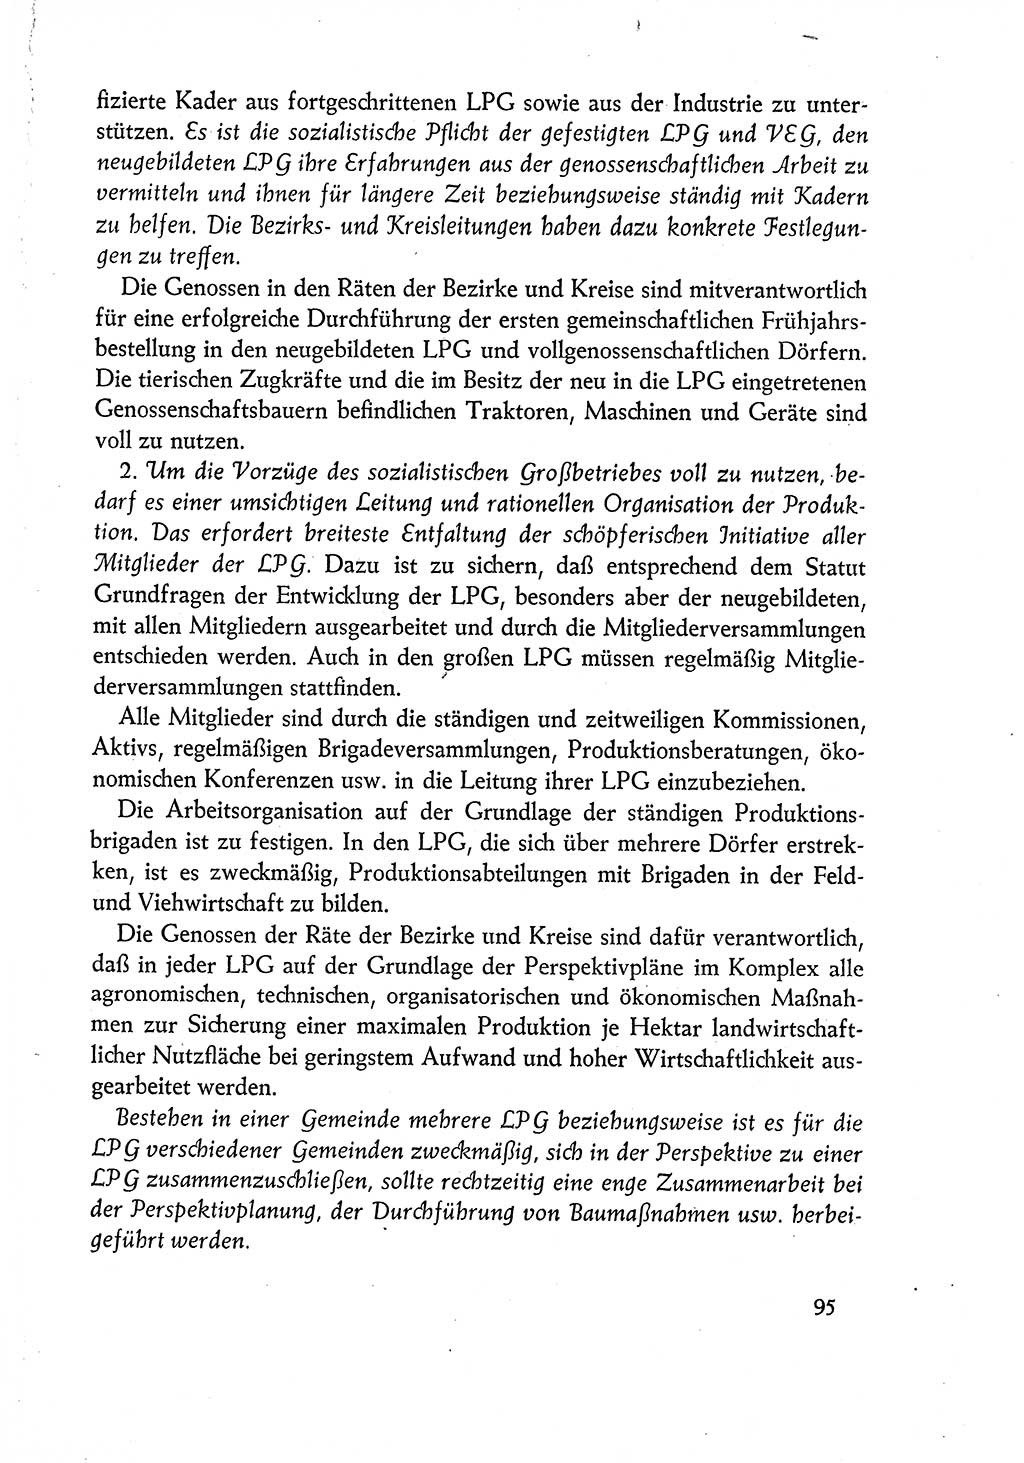 Dokumente der Sozialistischen Einheitspartei Deutschlands (SED) [Deutsche Demokratische Republik (DDR)] 1960-1961, Seite 95 (Dok. SED DDR 1960-1961, S. 95)